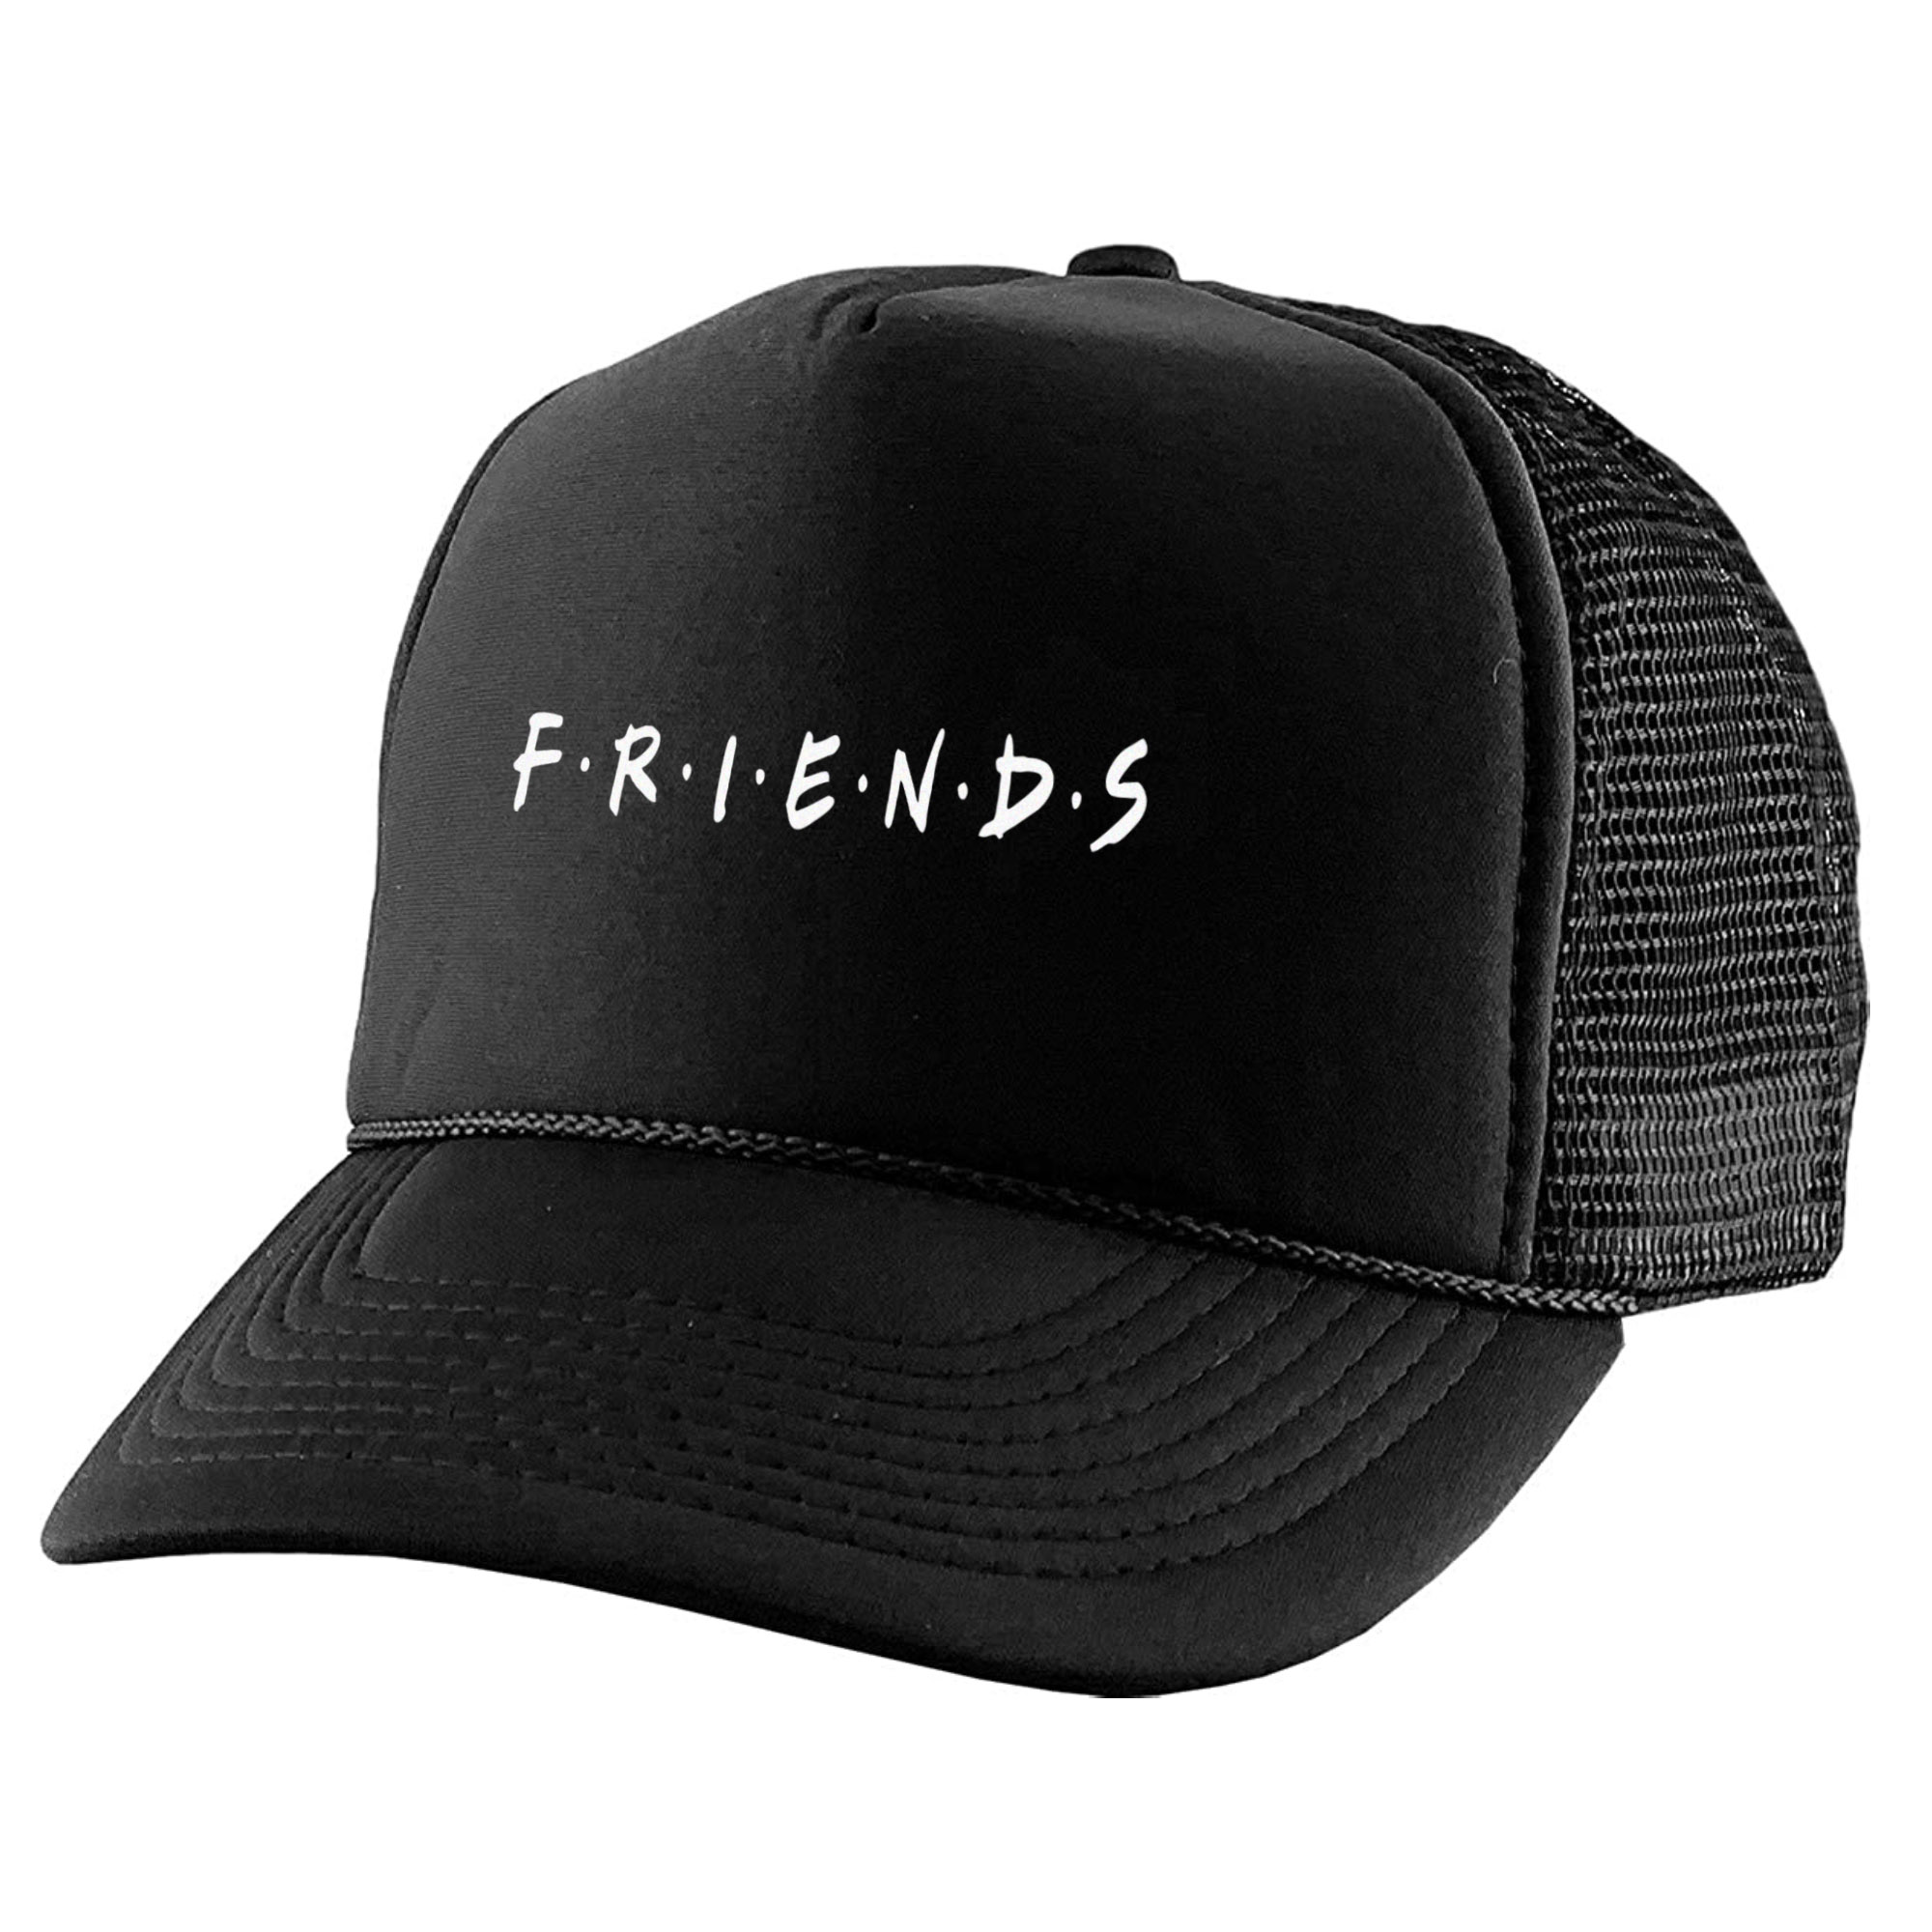 نکته خرید - قیمت روز کلاه کپ مدل سریال فرندز کد KPP-25 خرید